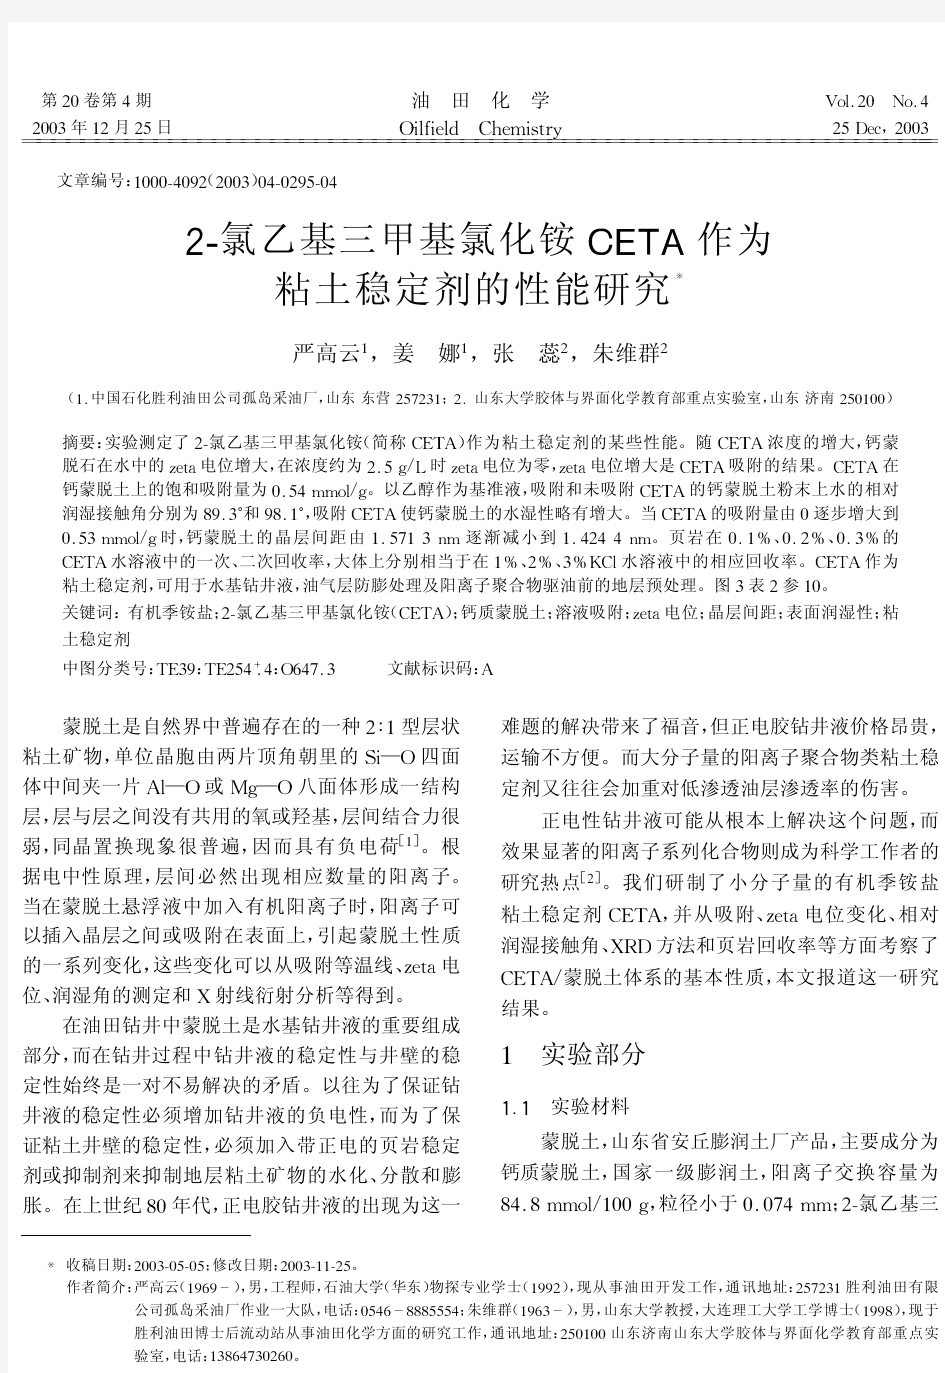 2-氯乙基三甲基氯化铵CETA作为粘土稳定剂的研究